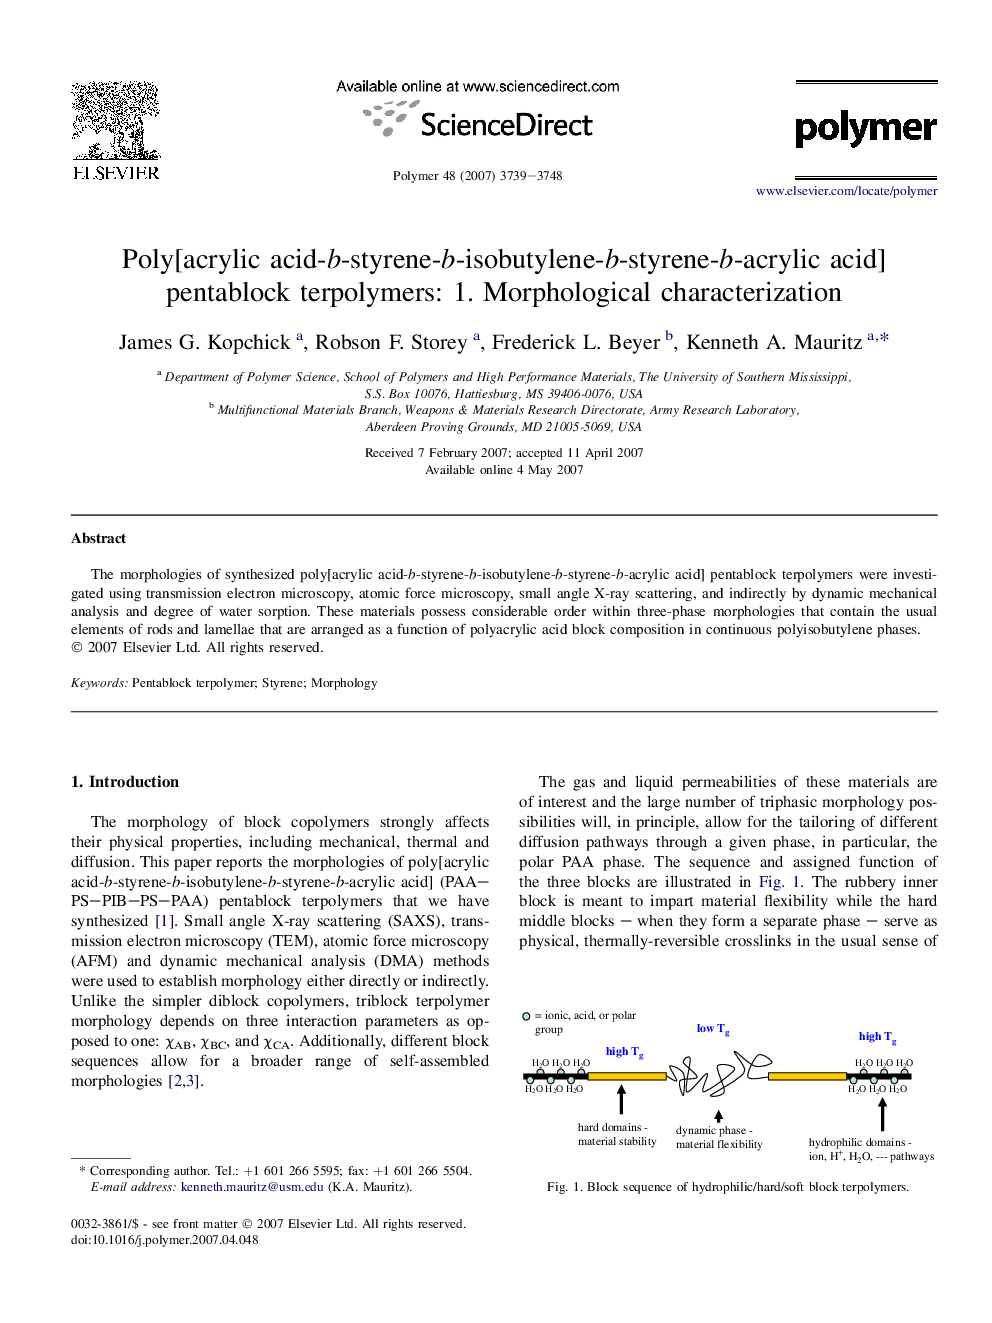 Poly[acrylic acid-b-styrene-b-isobutylene-b-styrene-b-acrylic acid] pentablock terpolymers: 1. Morphological characterization